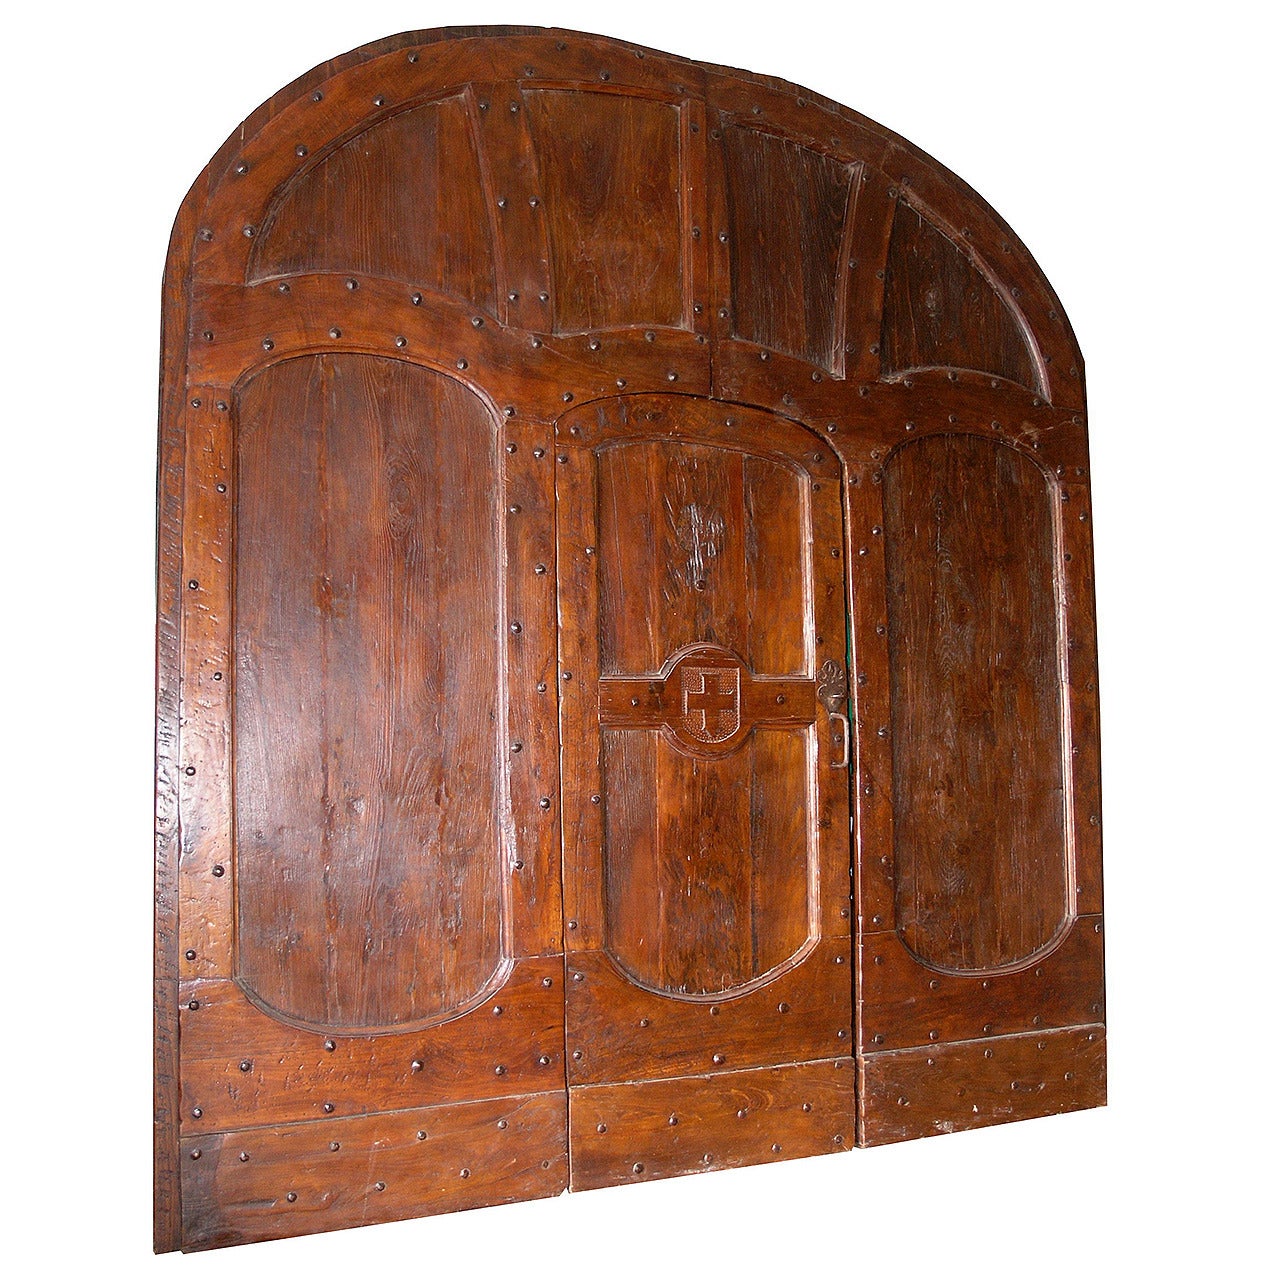 Antique Doorway with Its Original Door Made of Chestnut and Walnut